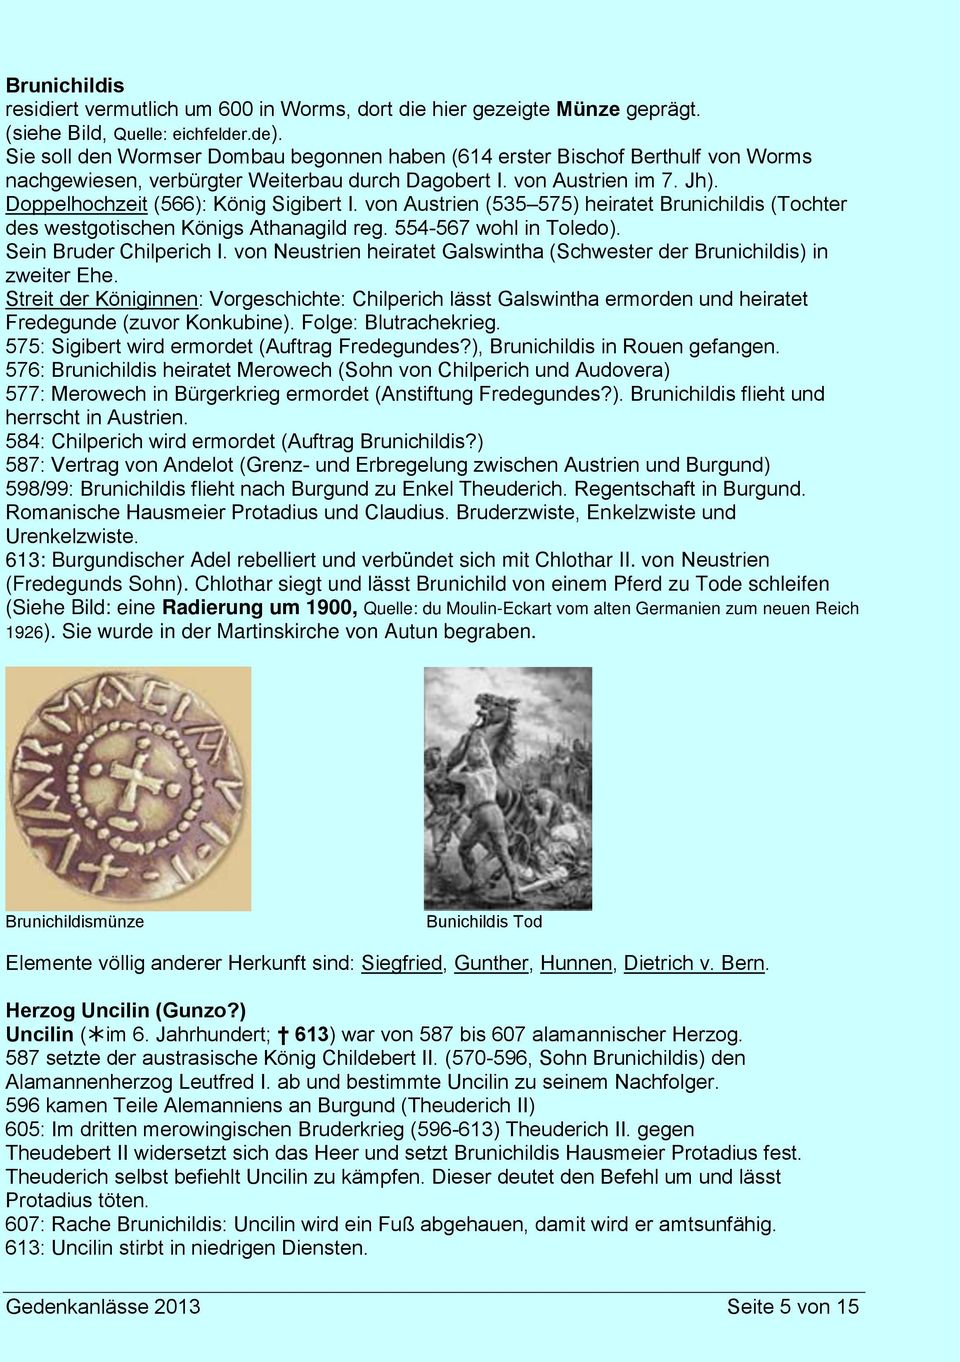 von Austrien (535 575) heiratet Brunichildis (Tochter des westgotischen Königs Athanagild reg. 554-567 wohl in Toledo). Sein Bruder Chilperich I.